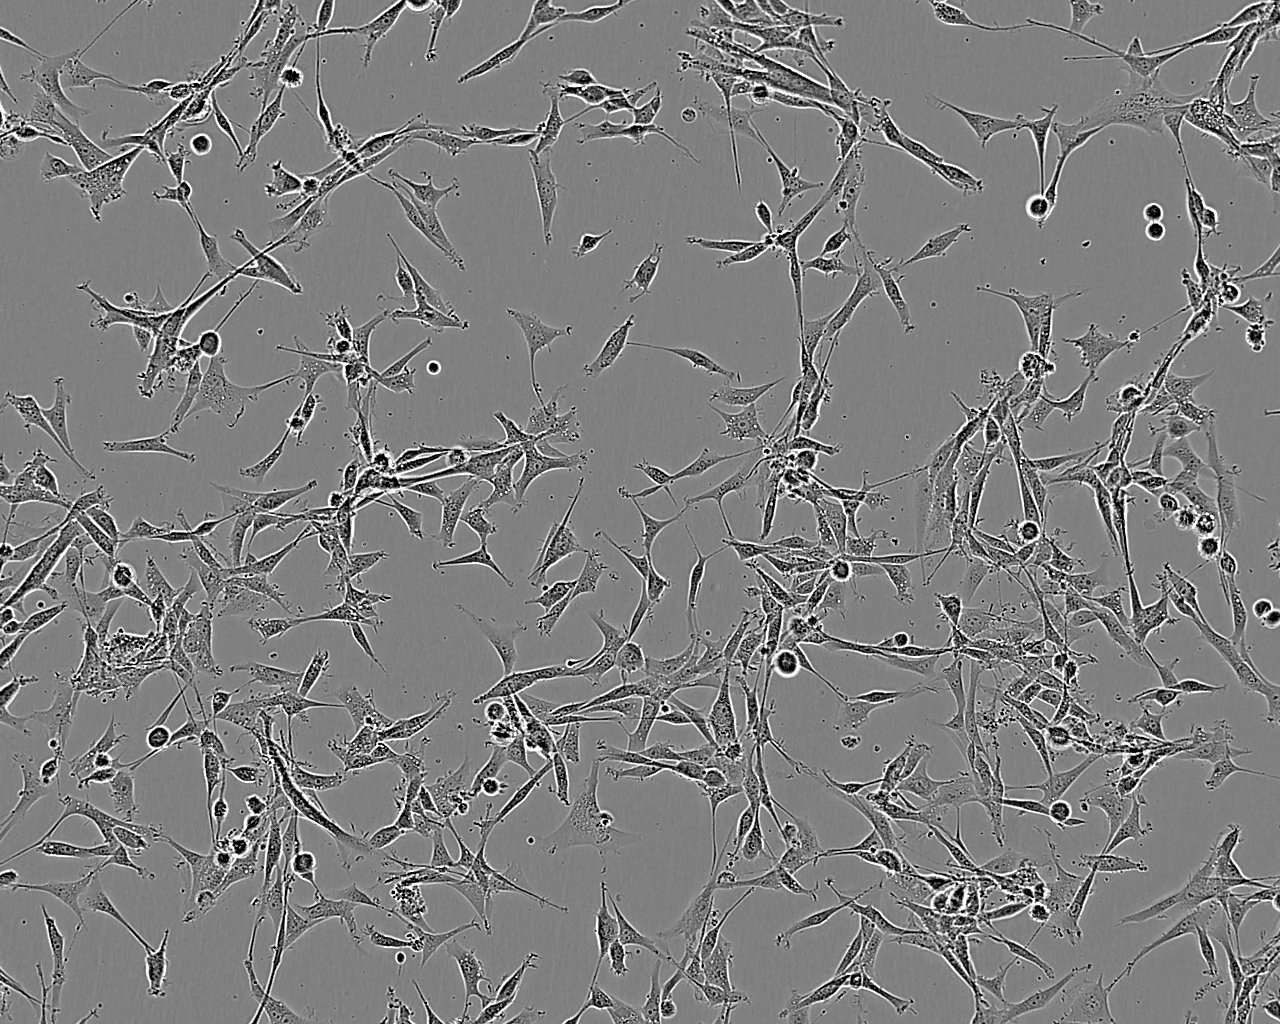 NCTC 1469 epithelioid cells小鼠正常肝细胞系